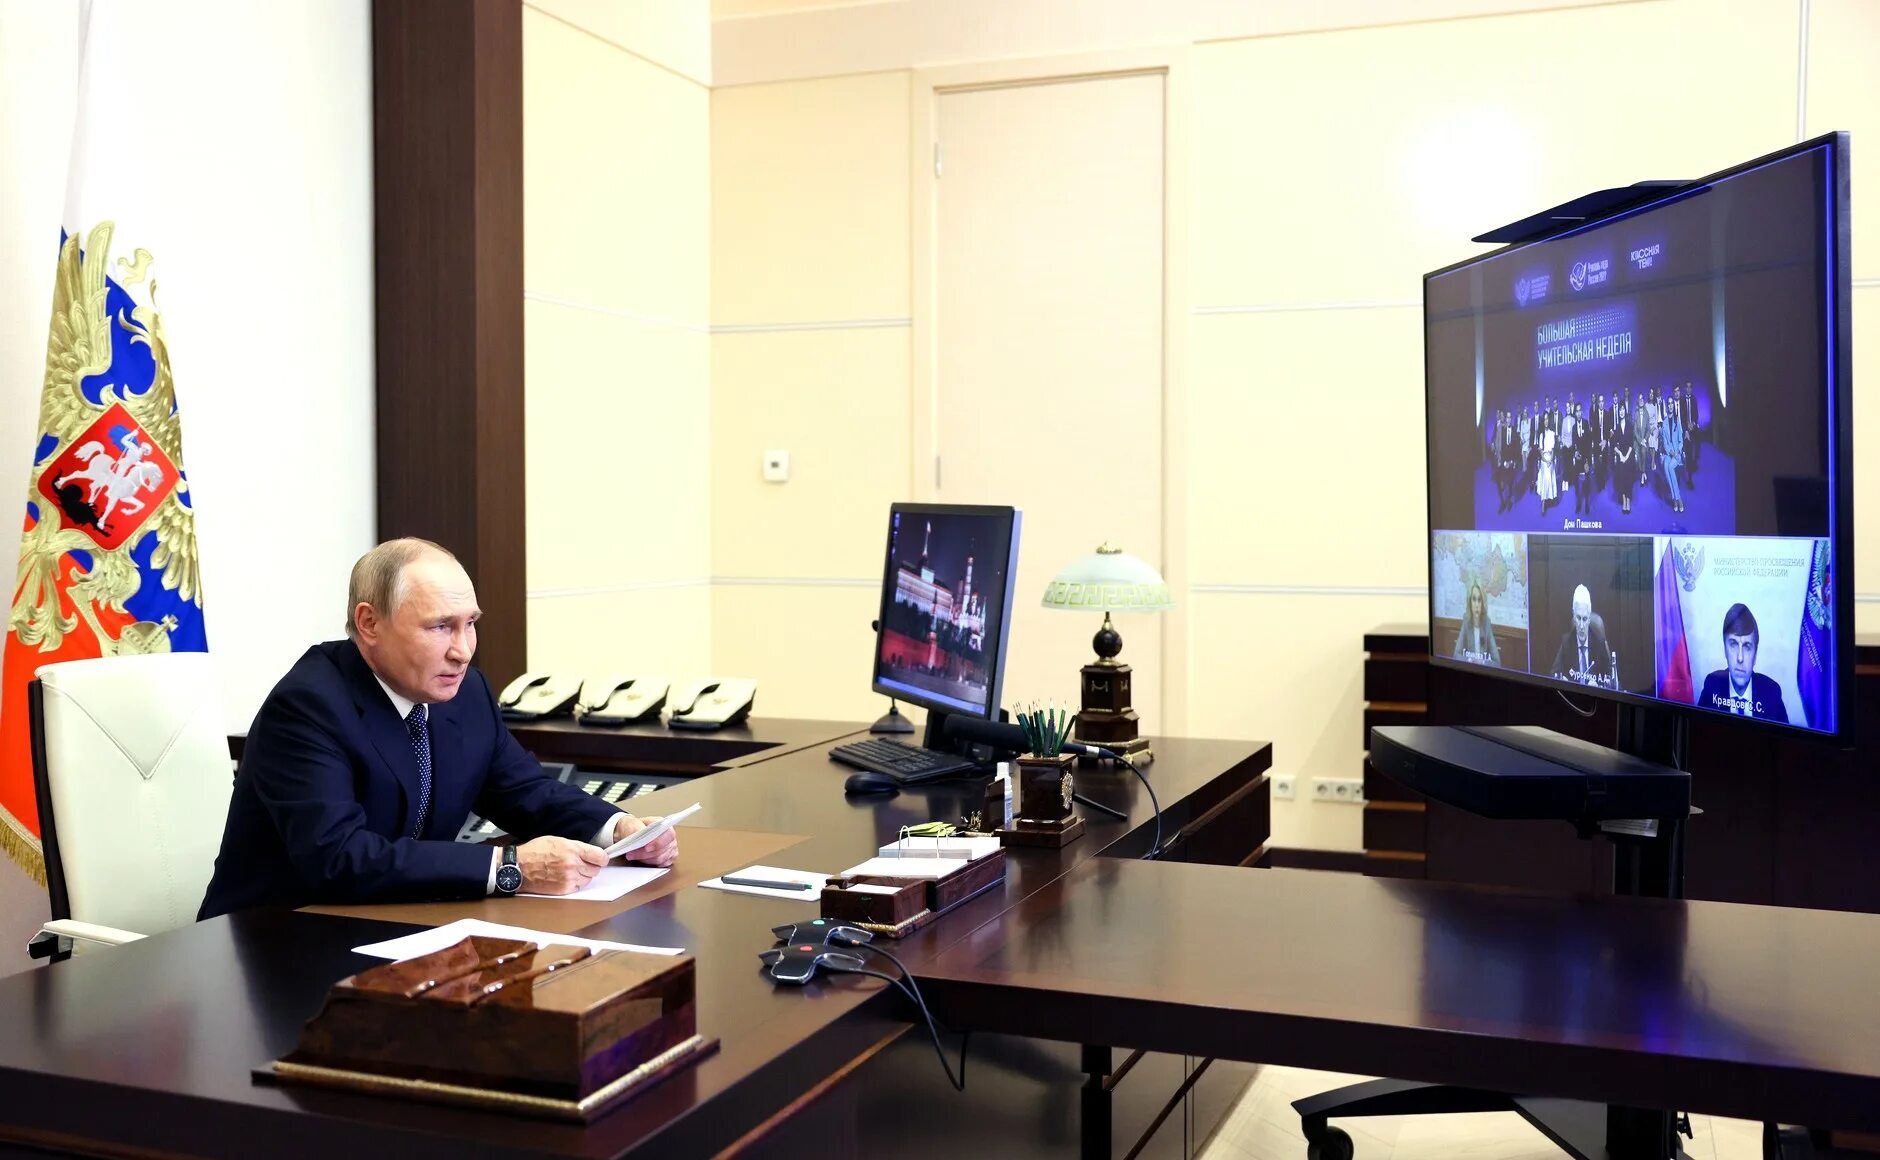 Встреча Путина. Встреча руководителей стран СНГ. Правительства рф от 30.09 2019 no 1279